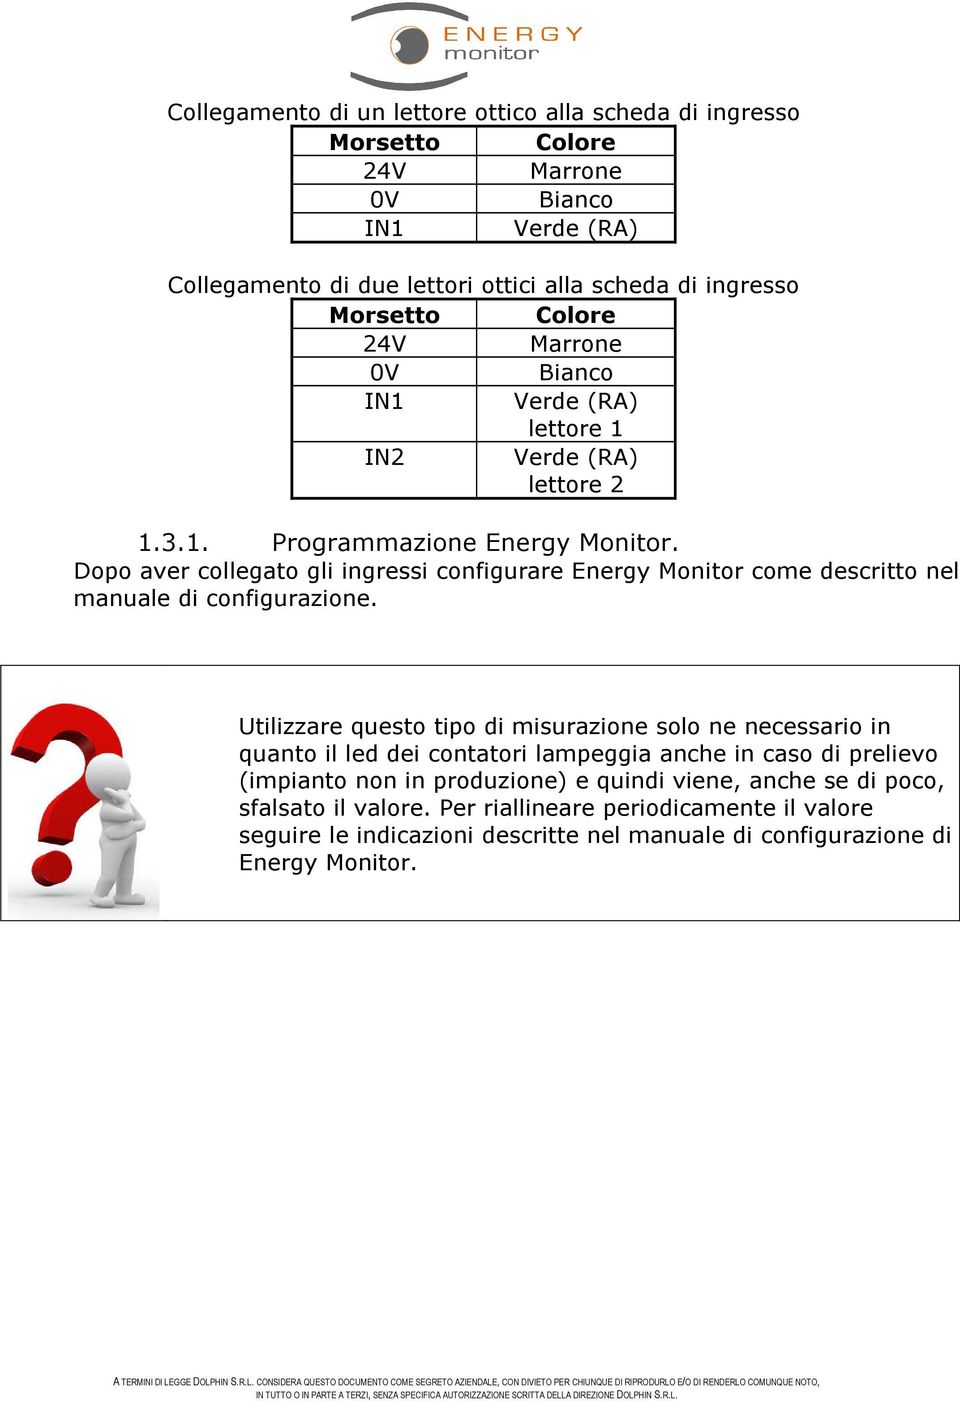 Dopo aver collegato gli ingressi configurare Energy Monitor come descritto nel manuale di configurazione.